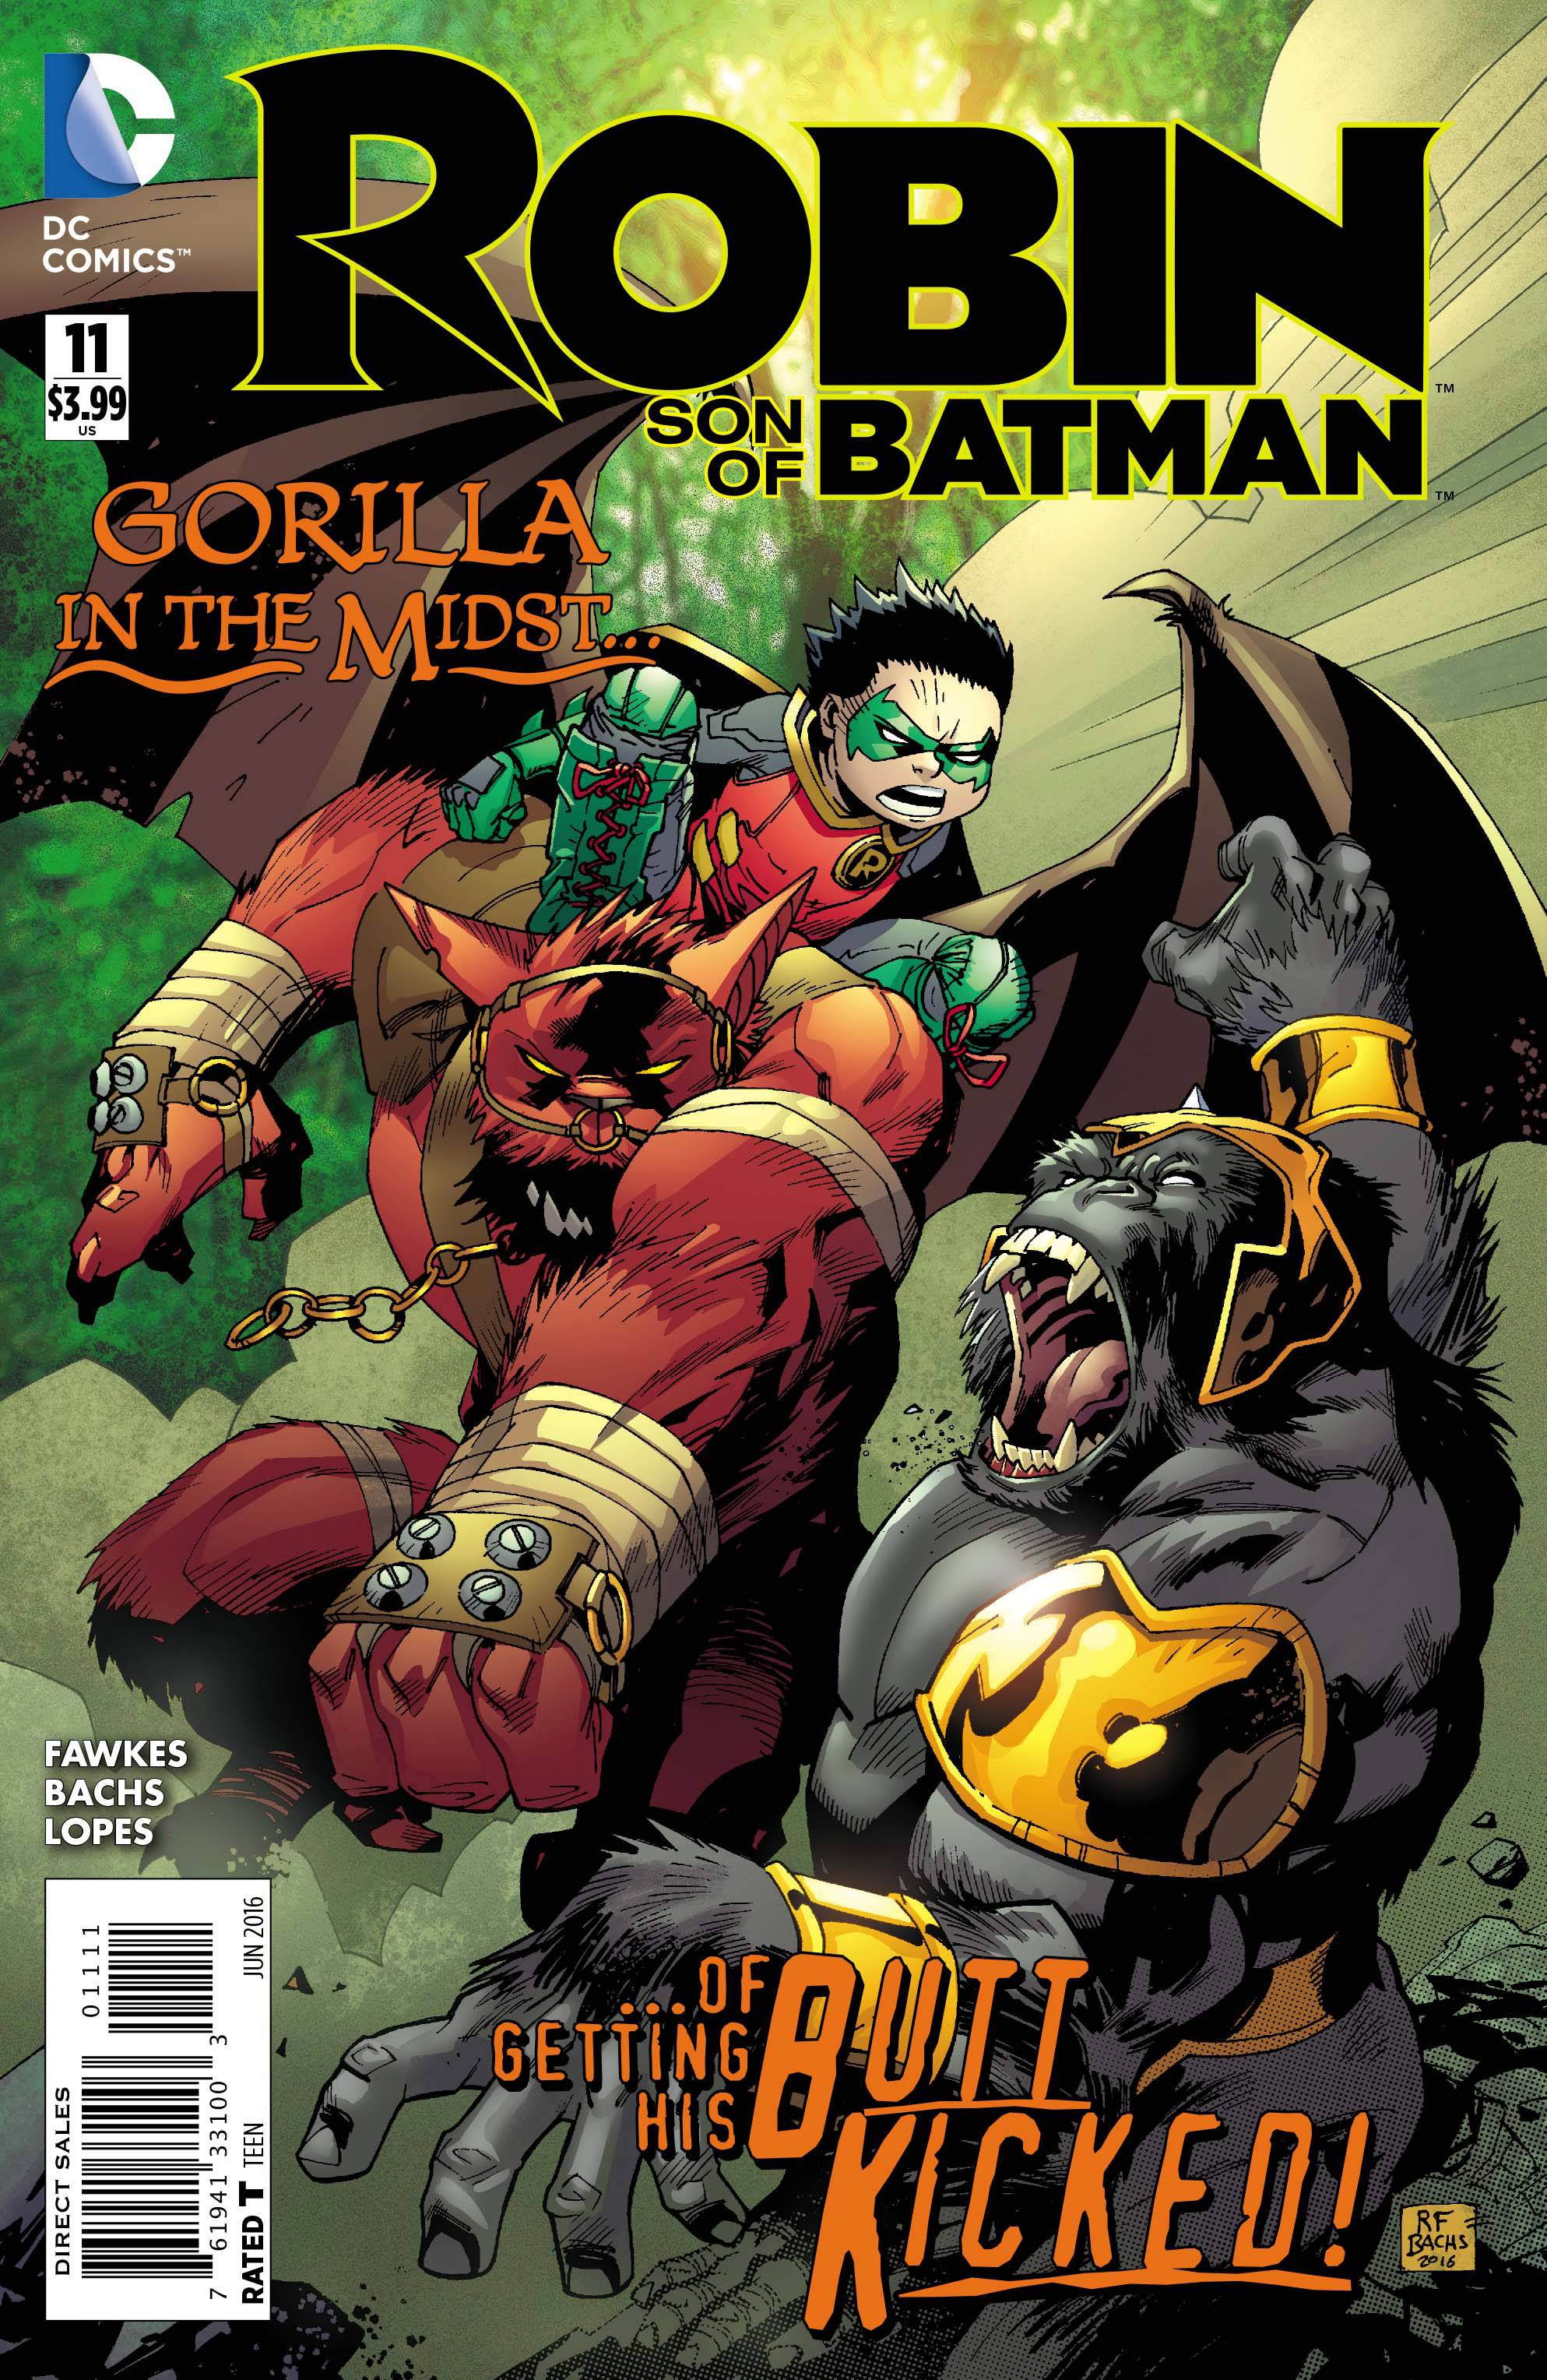 Robin Son of Batman #11 (2015)